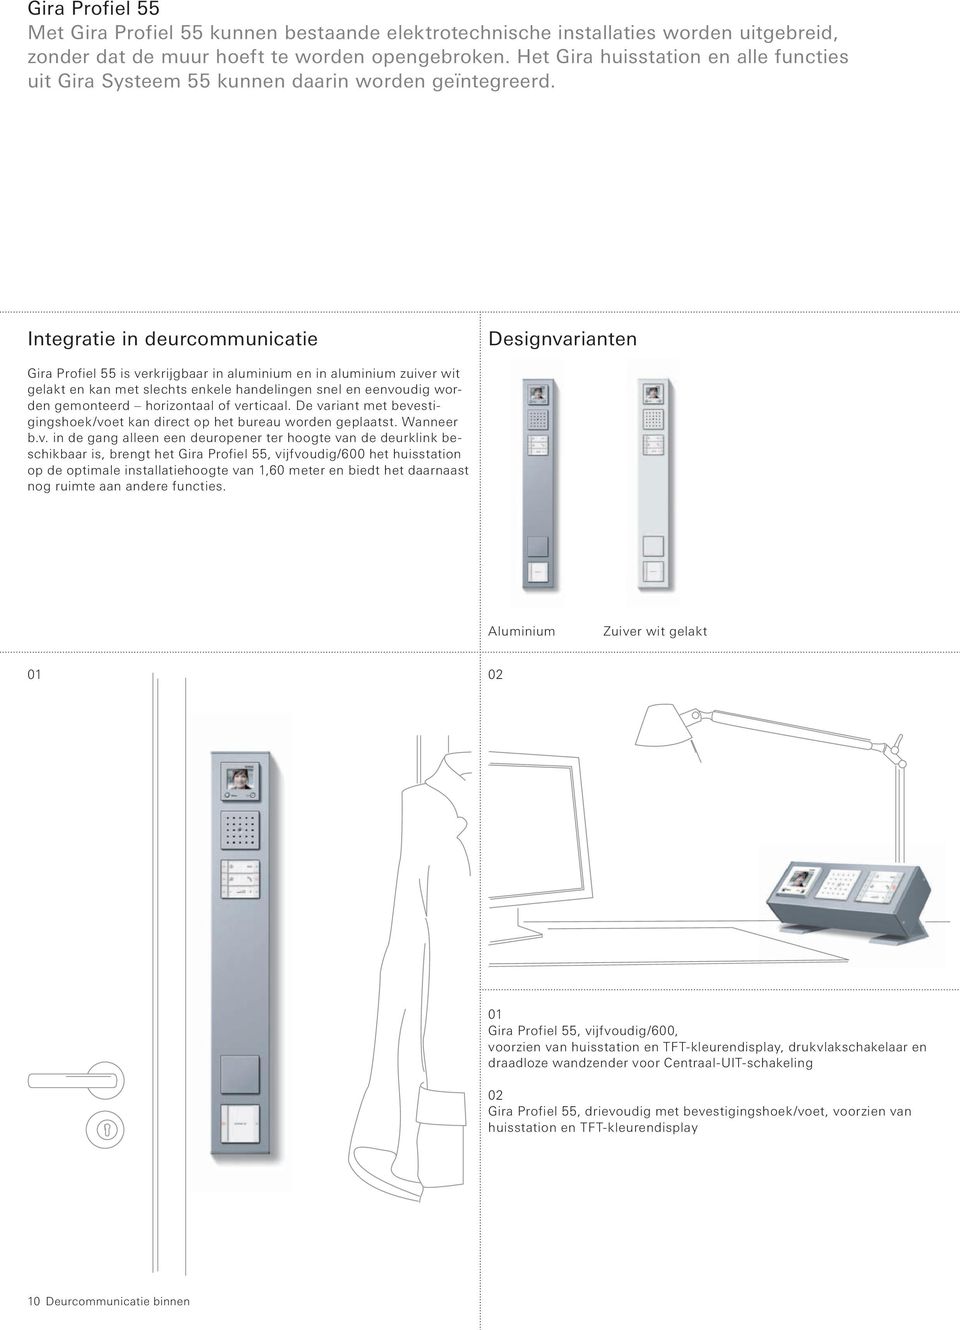 Integratie in deurcommunicatie Designvarianten Gira Profiel 55 is verkrijgbaar in aluminium en in aluminium zuiver wit gelakt en kan met slechts enkele handelingen snel en eenvoudig worden gemonteerd